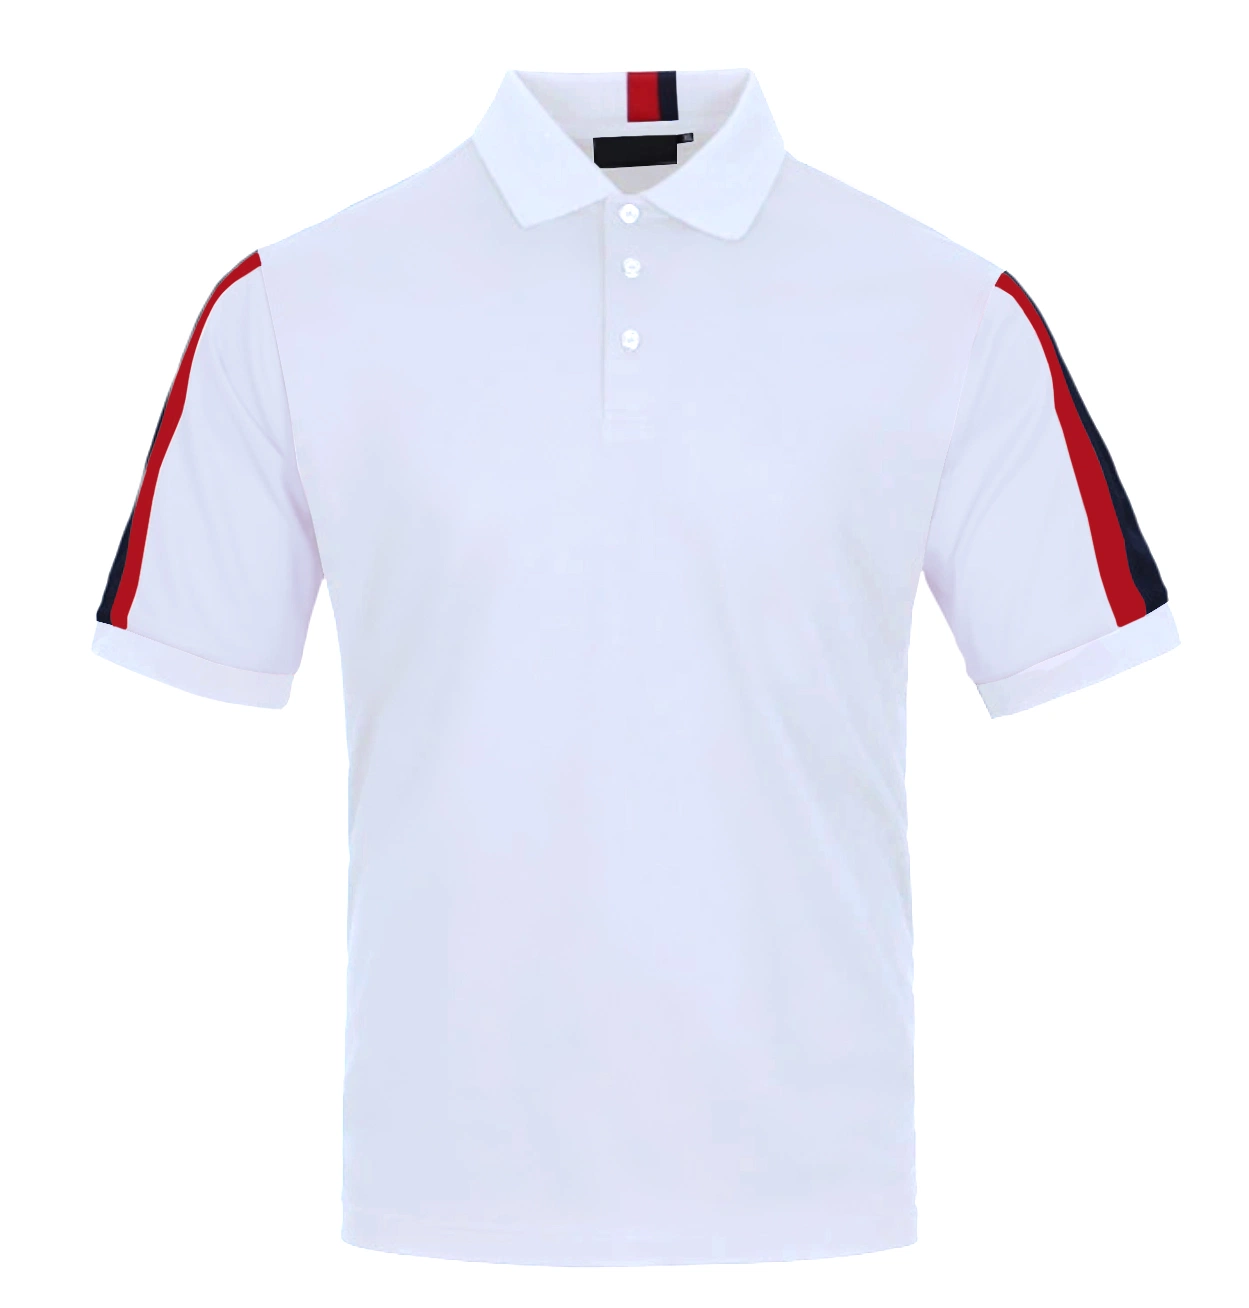 Comercio al por mayor de la moda de los hombres personalizados Camisa polo manga corta 100% algodón de 220 gramos de Golf de hombre camisetas polo